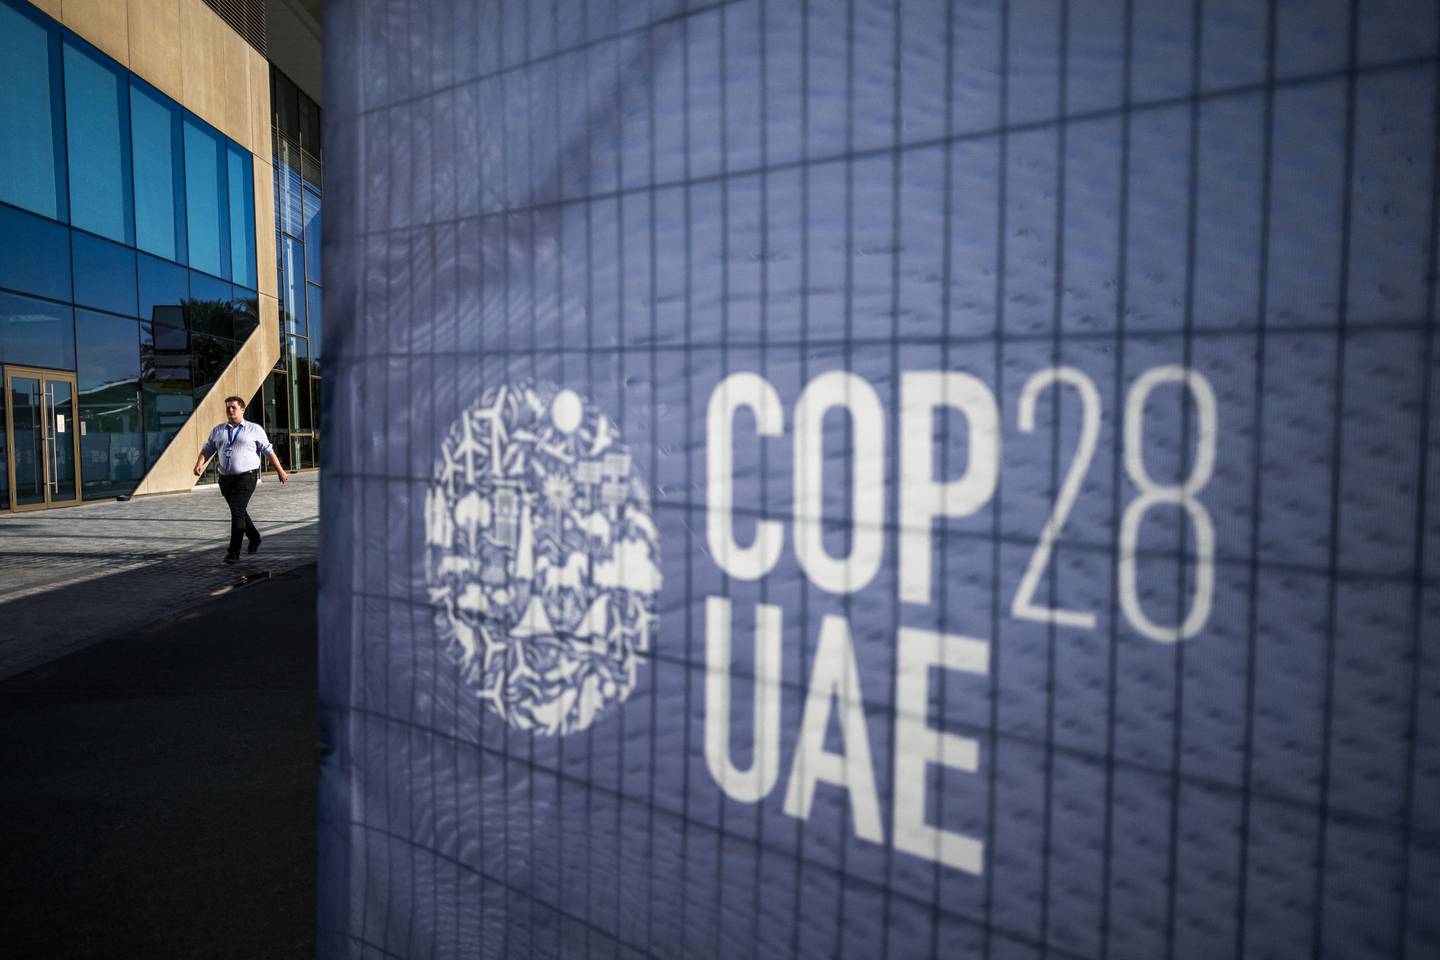 La COP28 en Dubái cuenta con la participación de cerca de 97,000 inscritos, más del doble en comparación con la conferencia anterior, poniendo a prueba la cooperación internacional en la lucha contra el cambio climático.